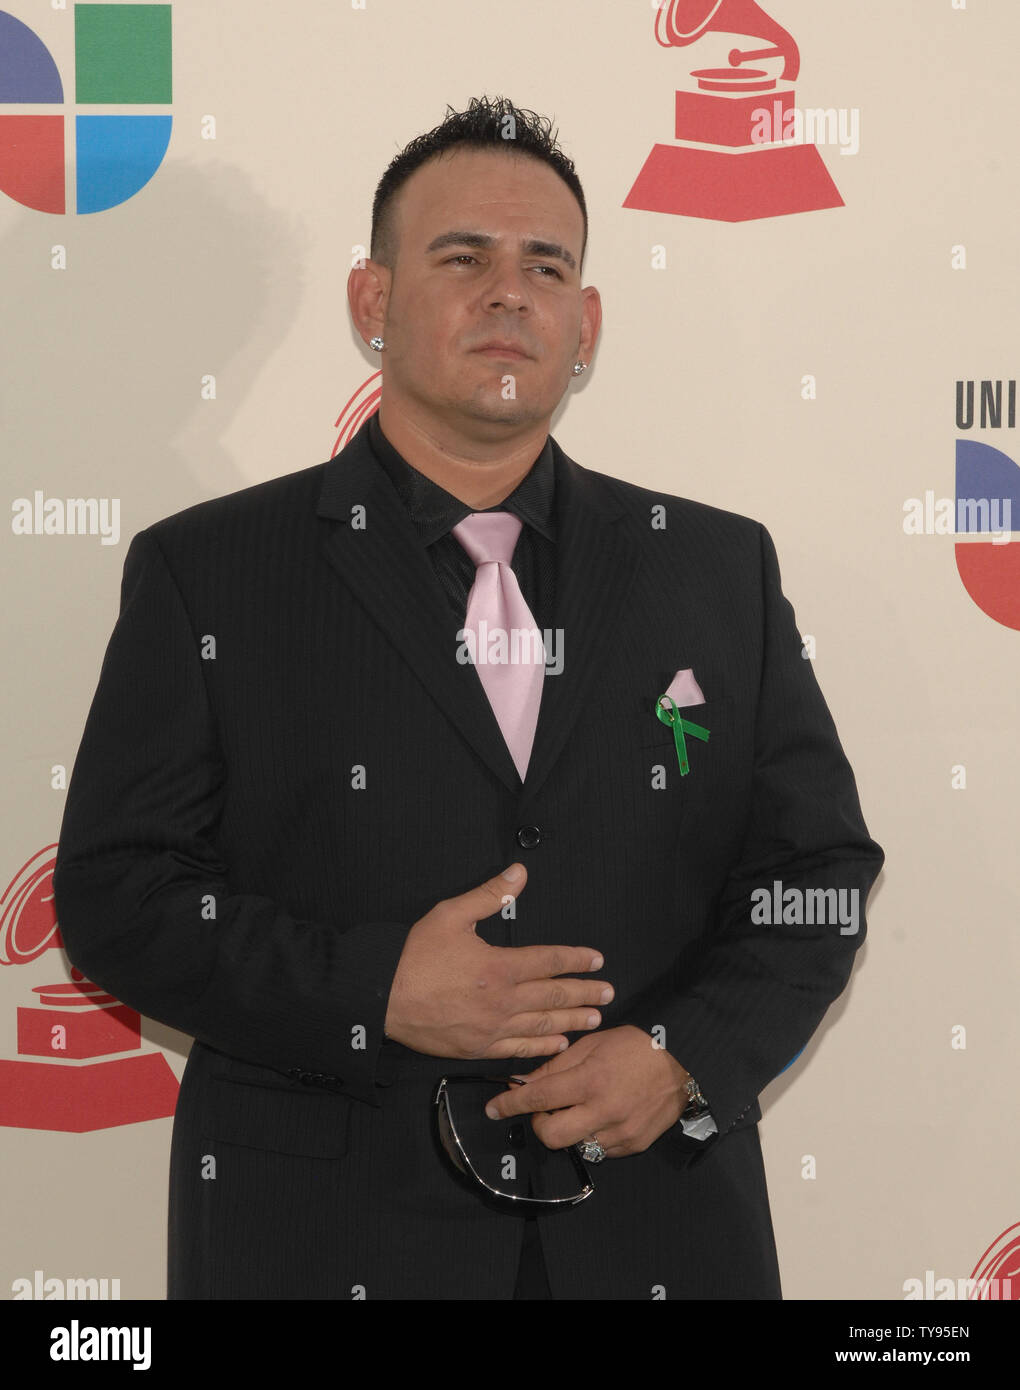 Javier Voltaje arrive à la 8e édition du Latin Grammy Awards au Mandalay Bay à Las Vegas au Nevada le 8 novembre 2007. (Photo d'UPI/Jim Ruymen) Banque D'Images